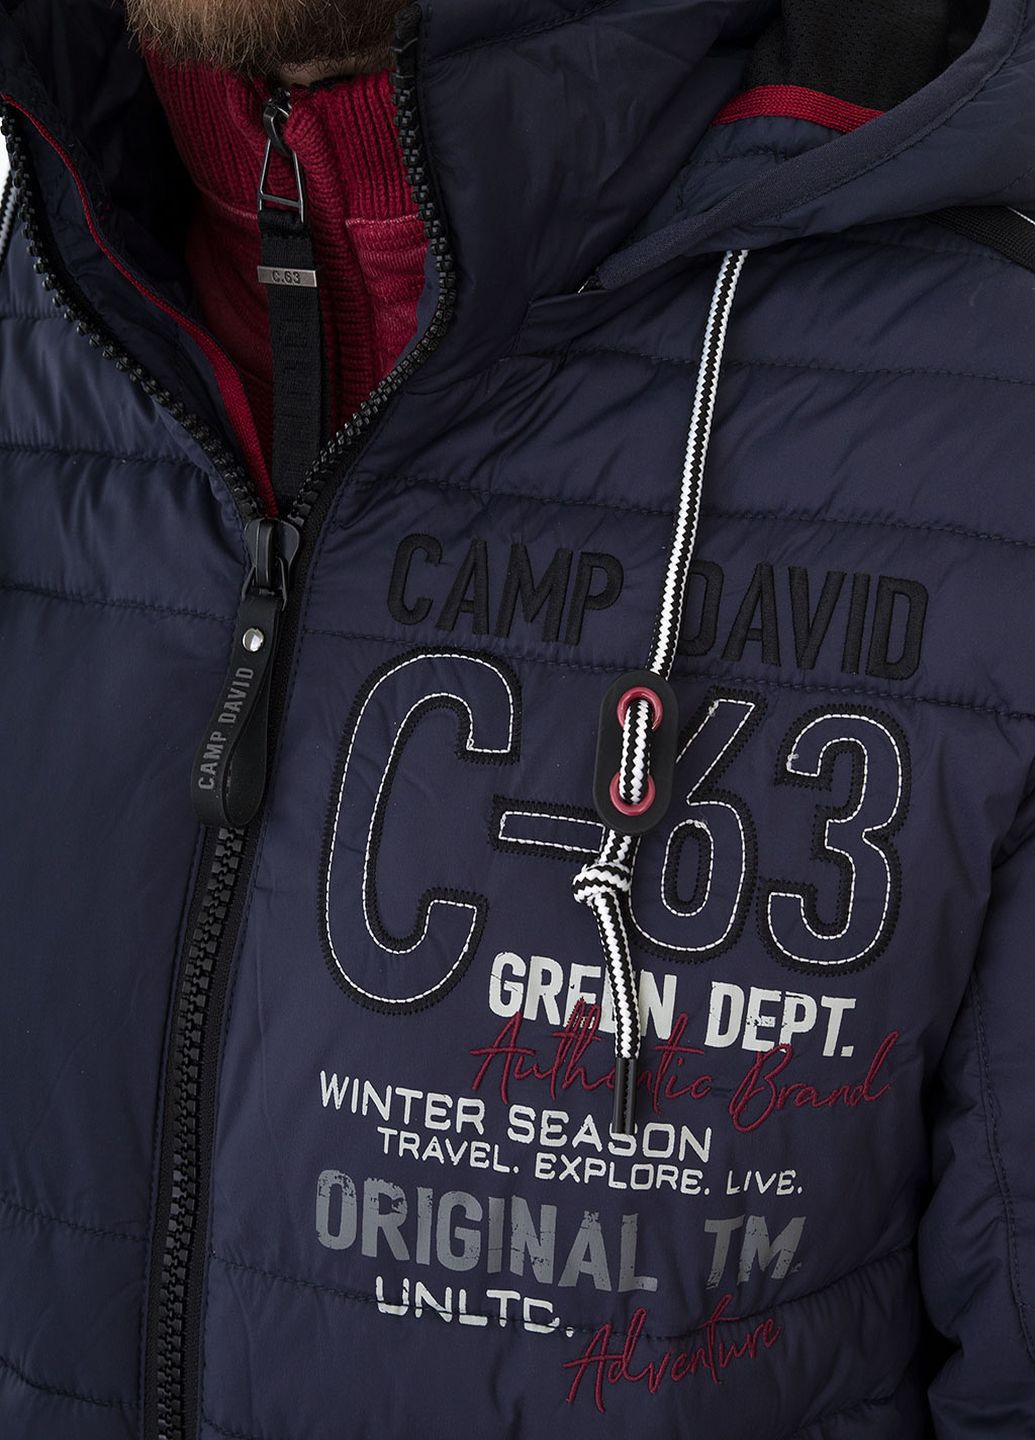 Синяя зимняя куртка Camp David